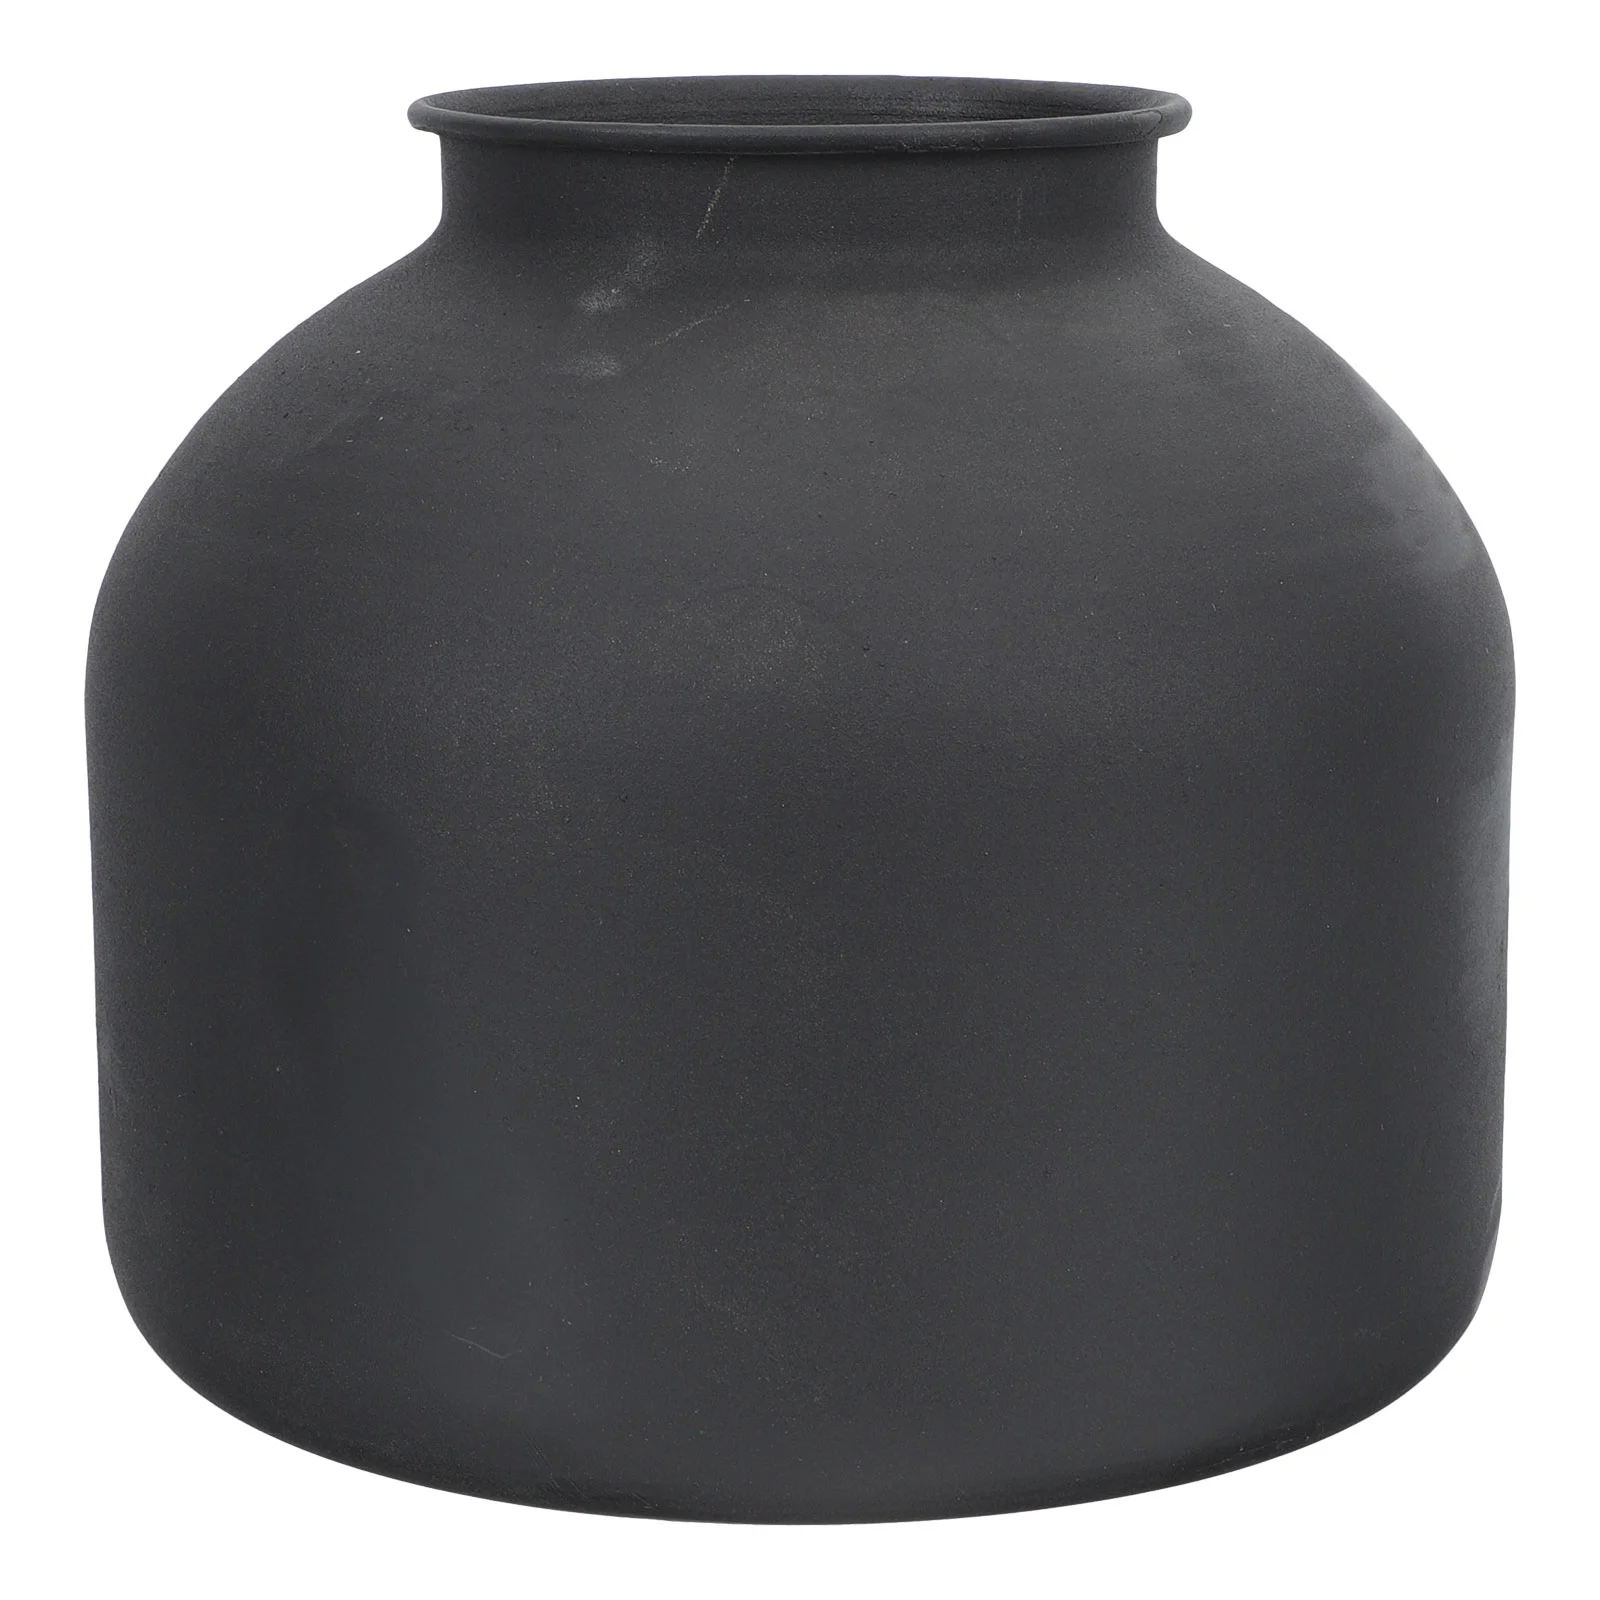 

Vase Flower Black Pot Vases Iron Decor Matte Metal Home Vintage Centerpieces Planter Arrangement Office Pots Container Dry